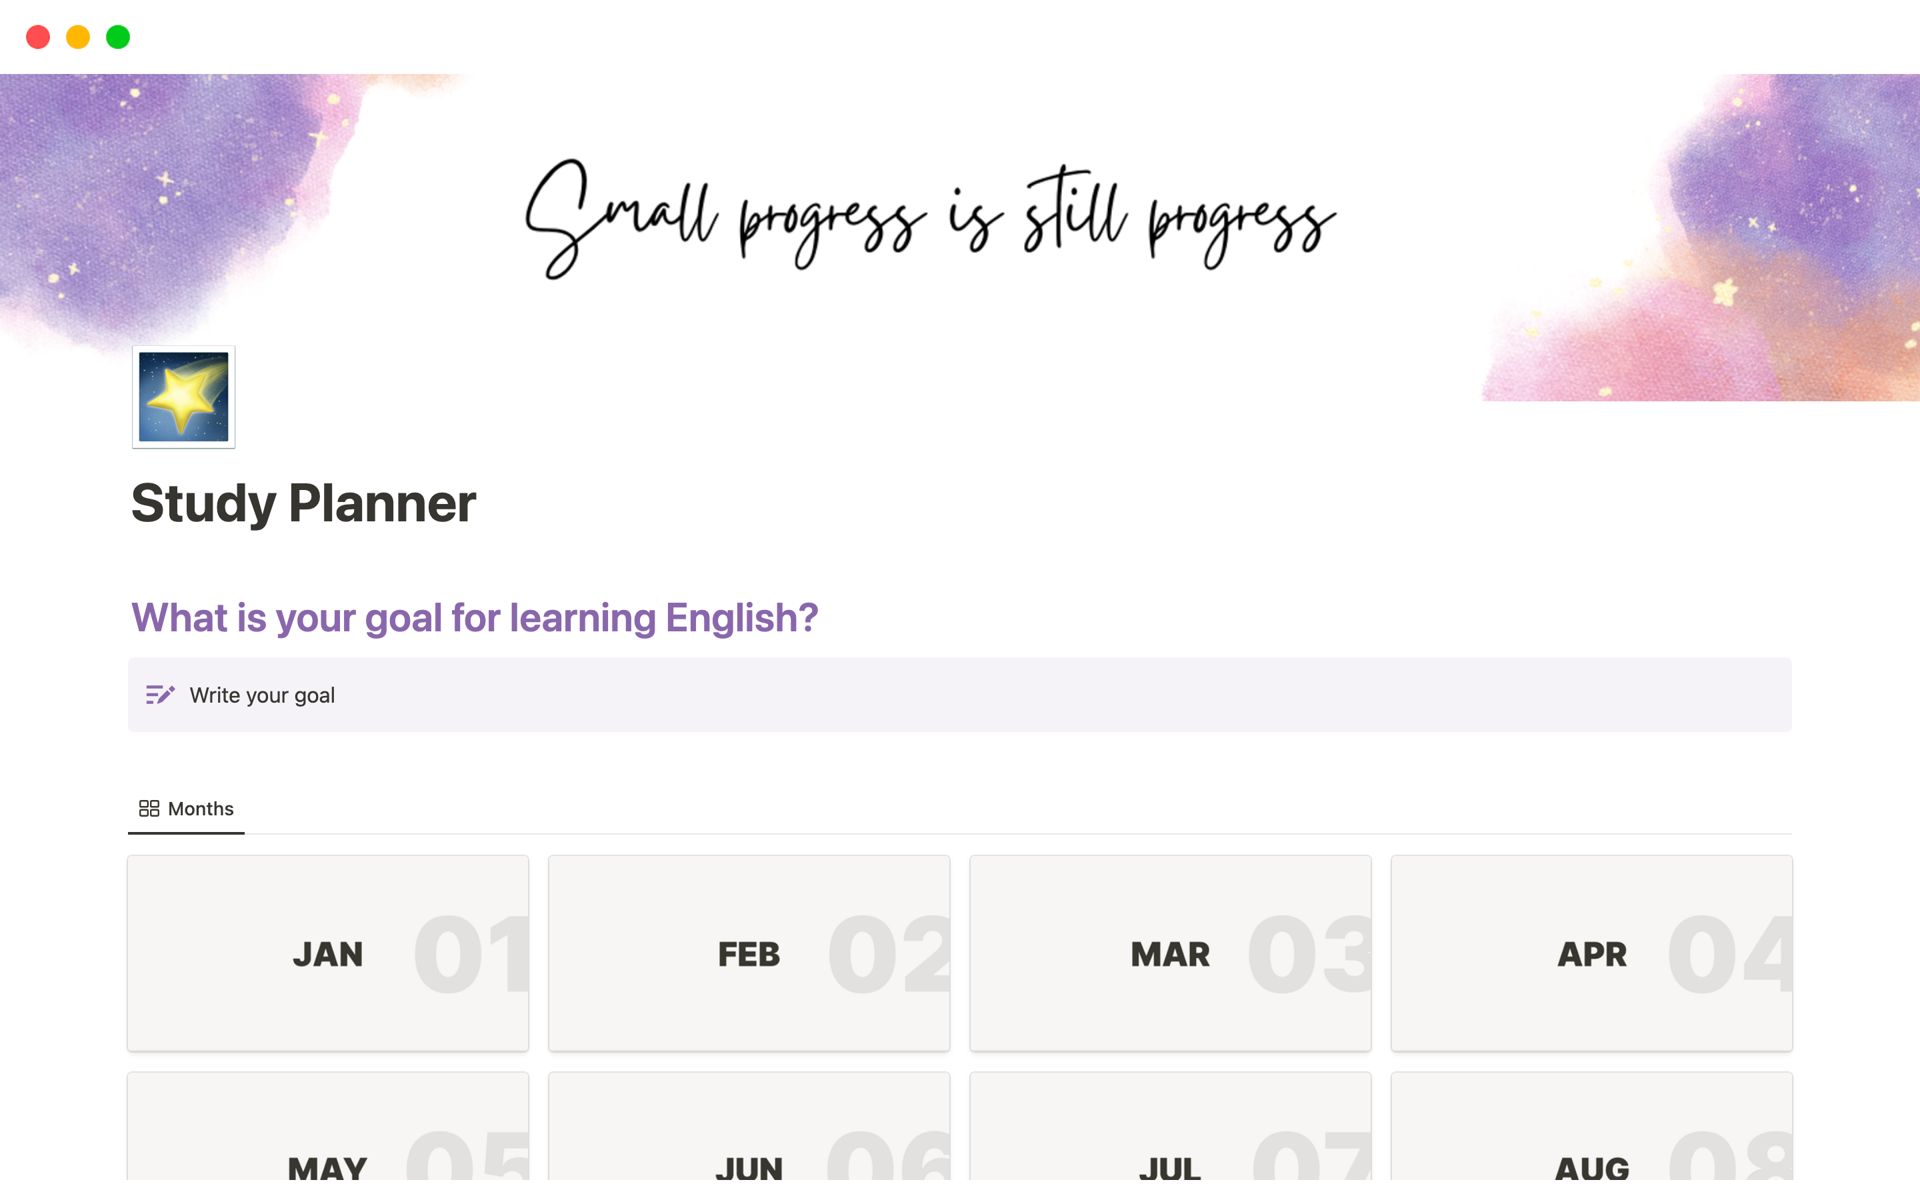 日々の英語学習の計画とログが記録できるテンプレート